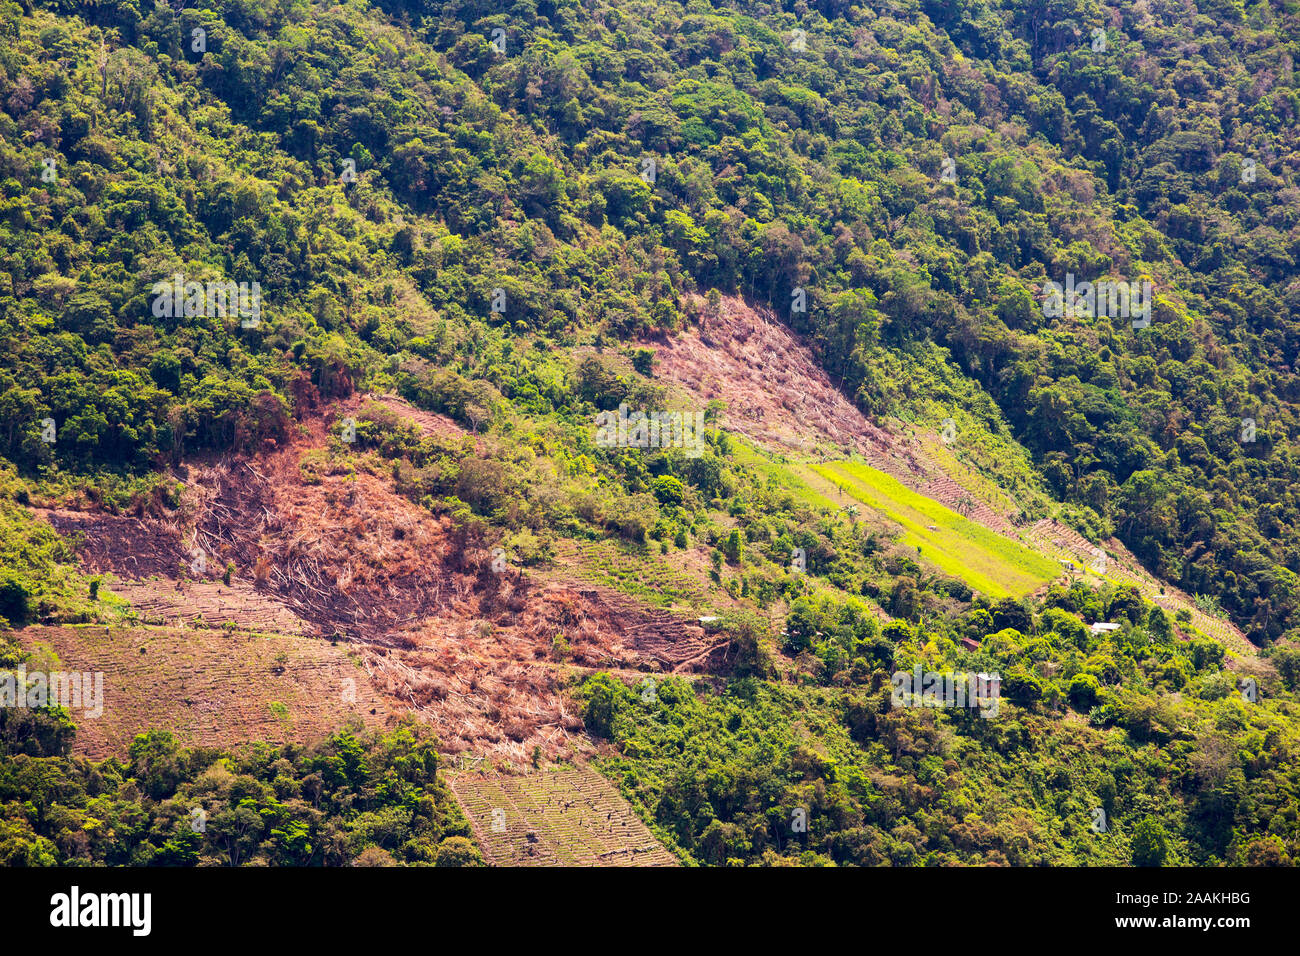 Des forêts tropicales de montagne en Bolivie près de Coiroca, être défrichés pour l'agriculture. La Bolivie a des taux très élevés de déforestation, un désastre pour la biodiversité Banque D'Images